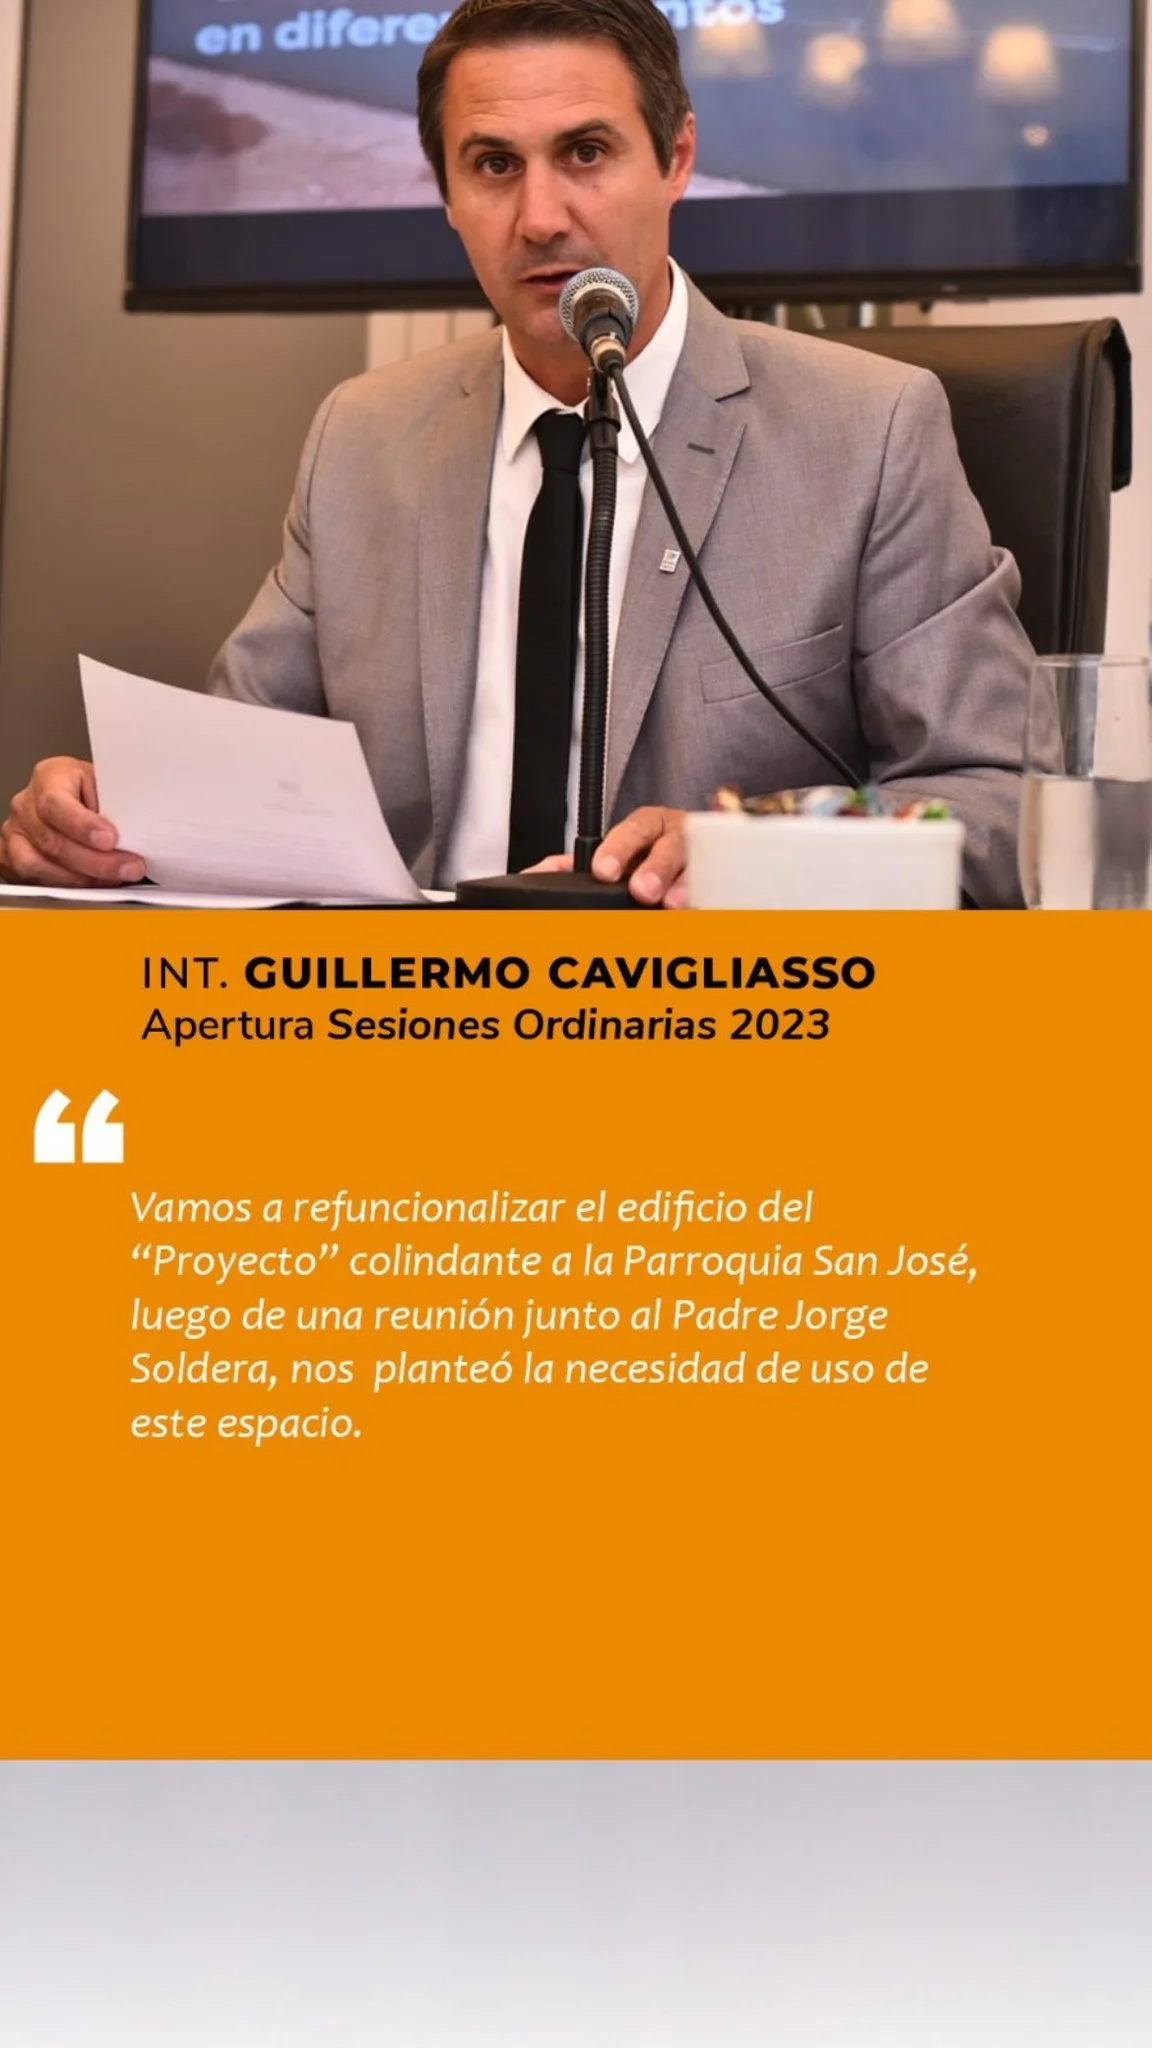 General Cabrera: Discurso de apertura de Sesiones Ordinarias ciudad